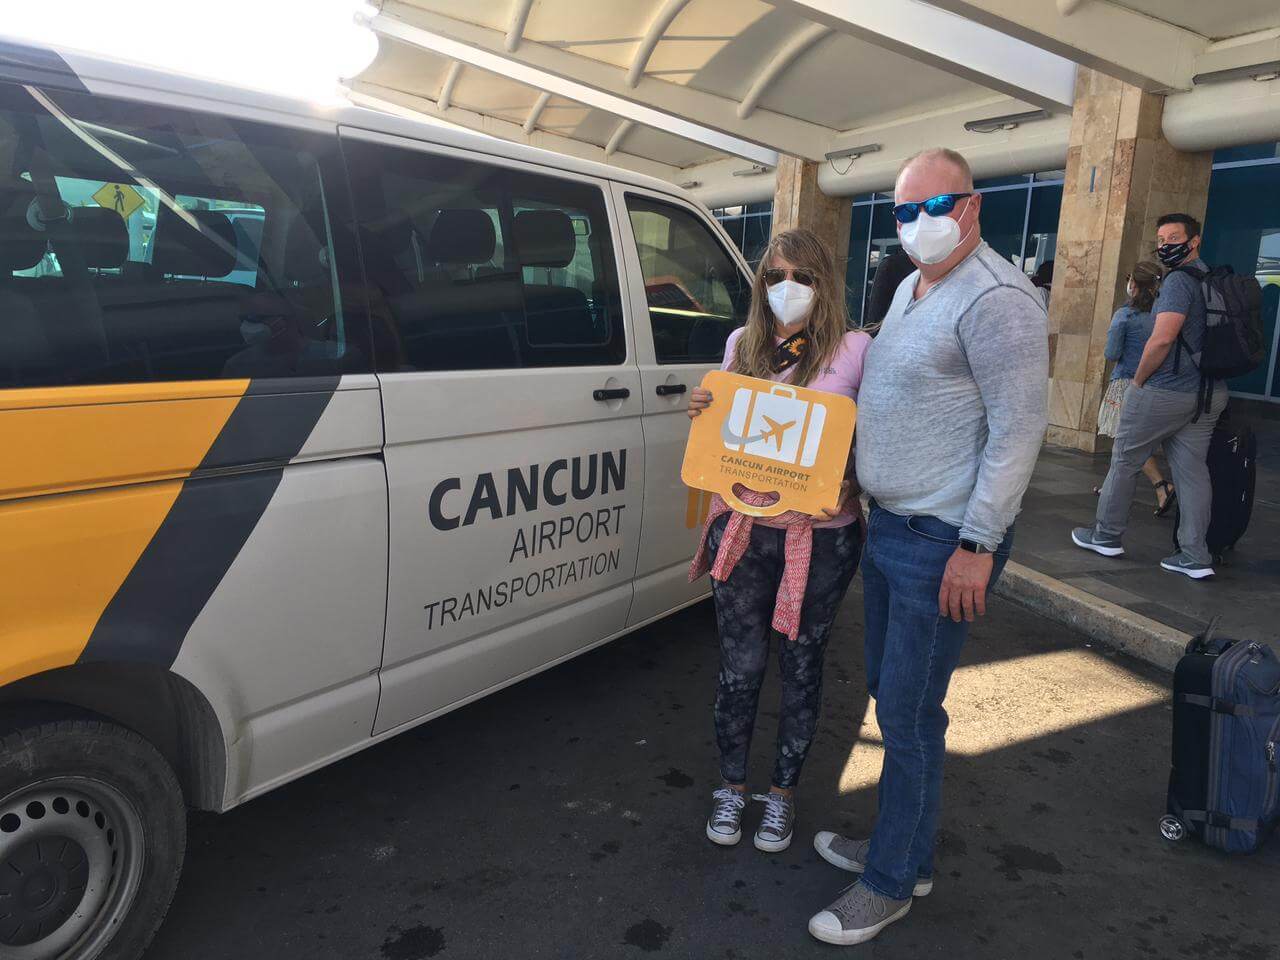 Dos clientes usando máscaras en el Aeropuerto de Cancún después de un servicio de Transporte Privado